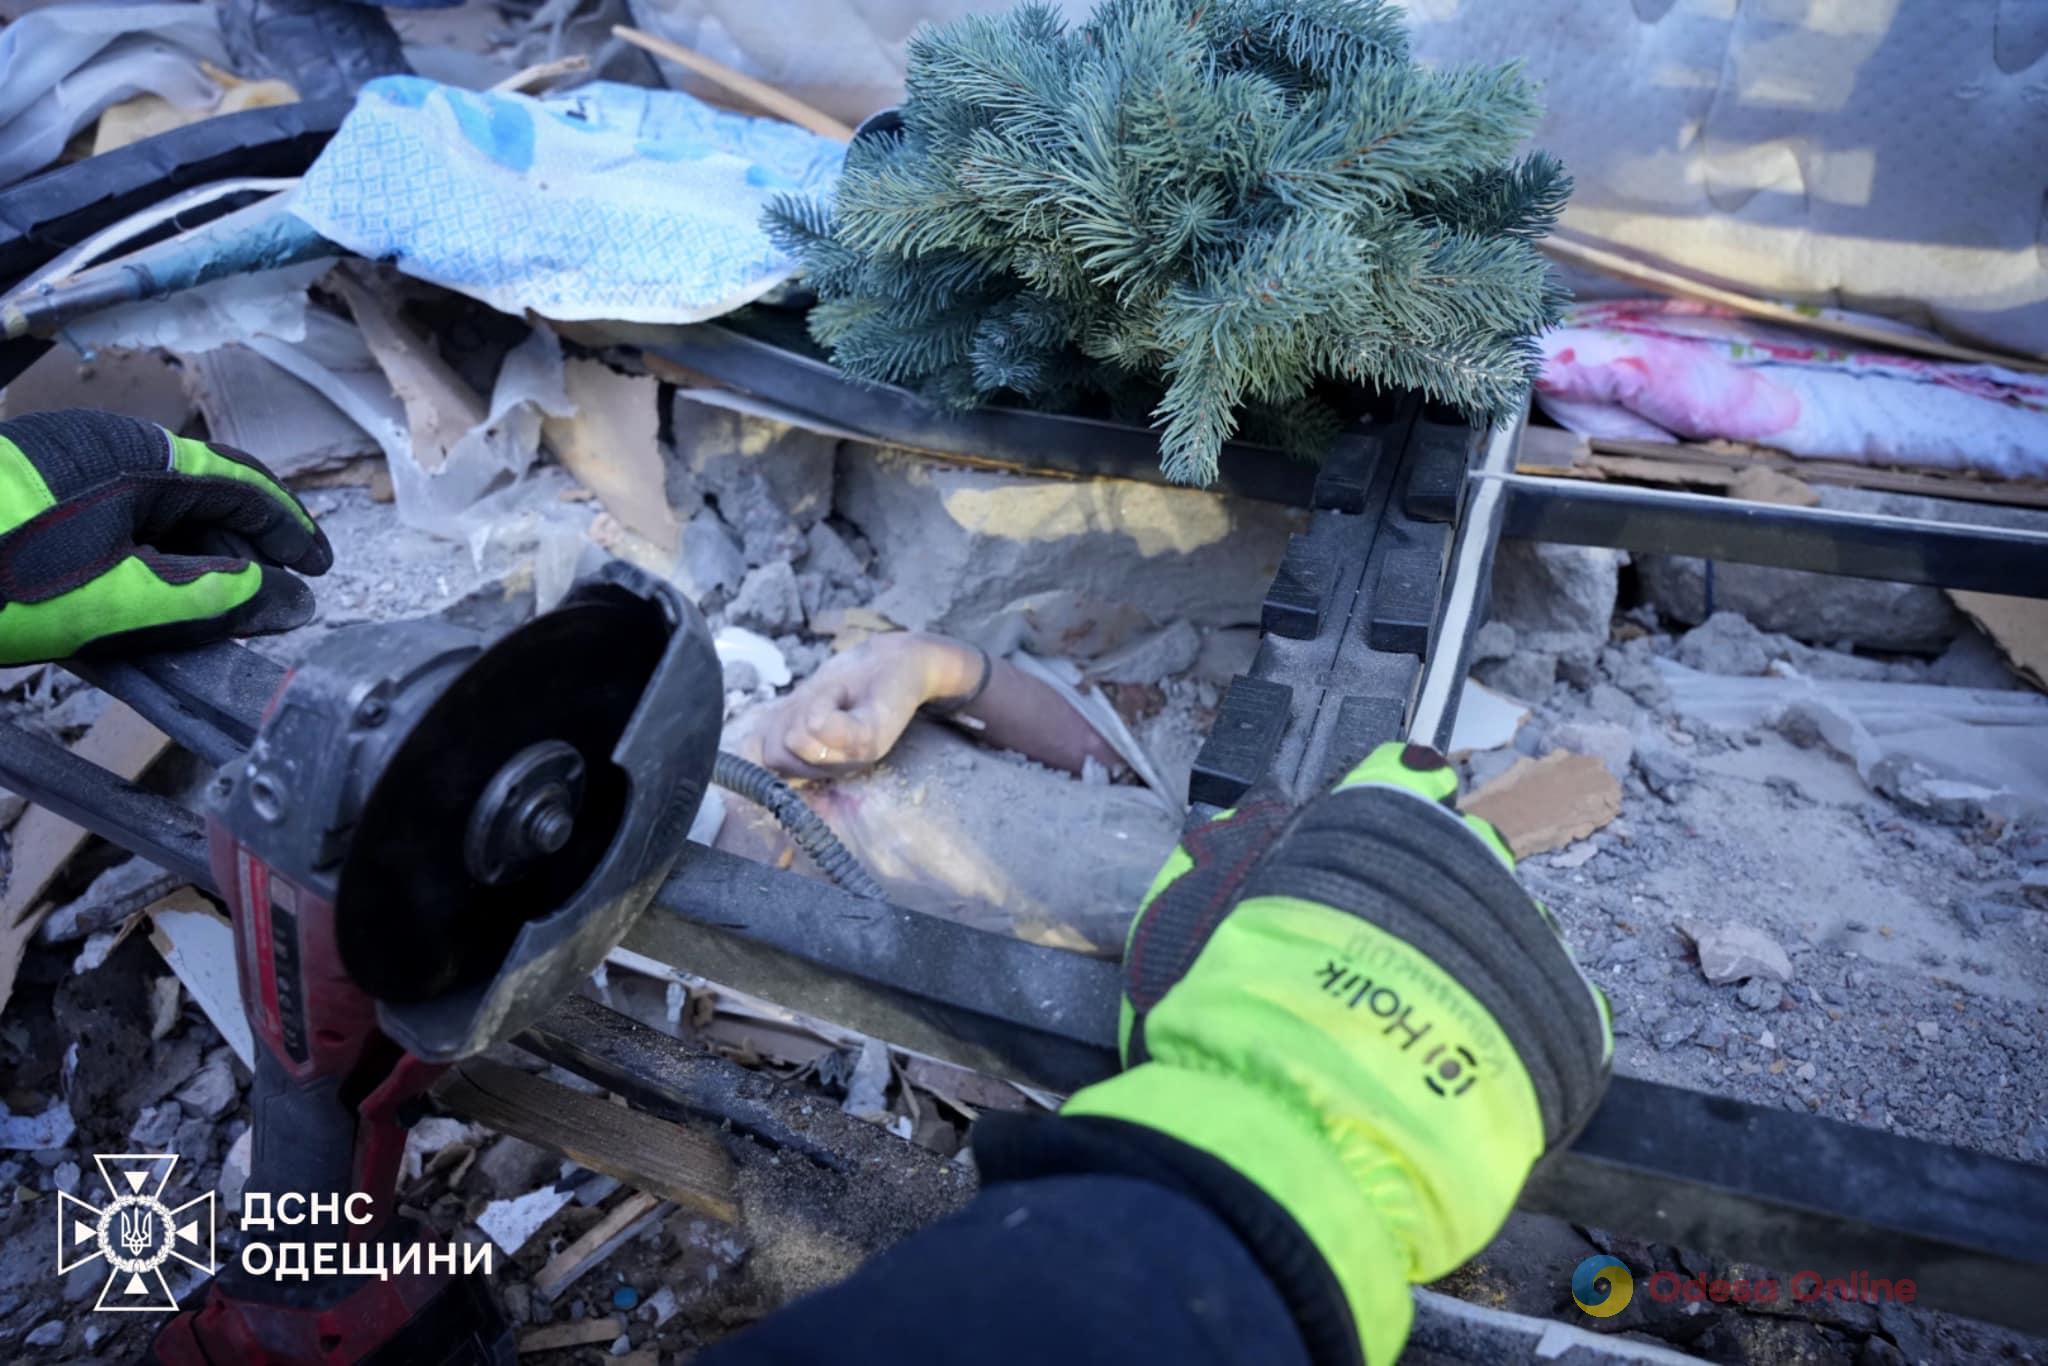 Одесса: из-под завалов достали тела младенца и его мамы